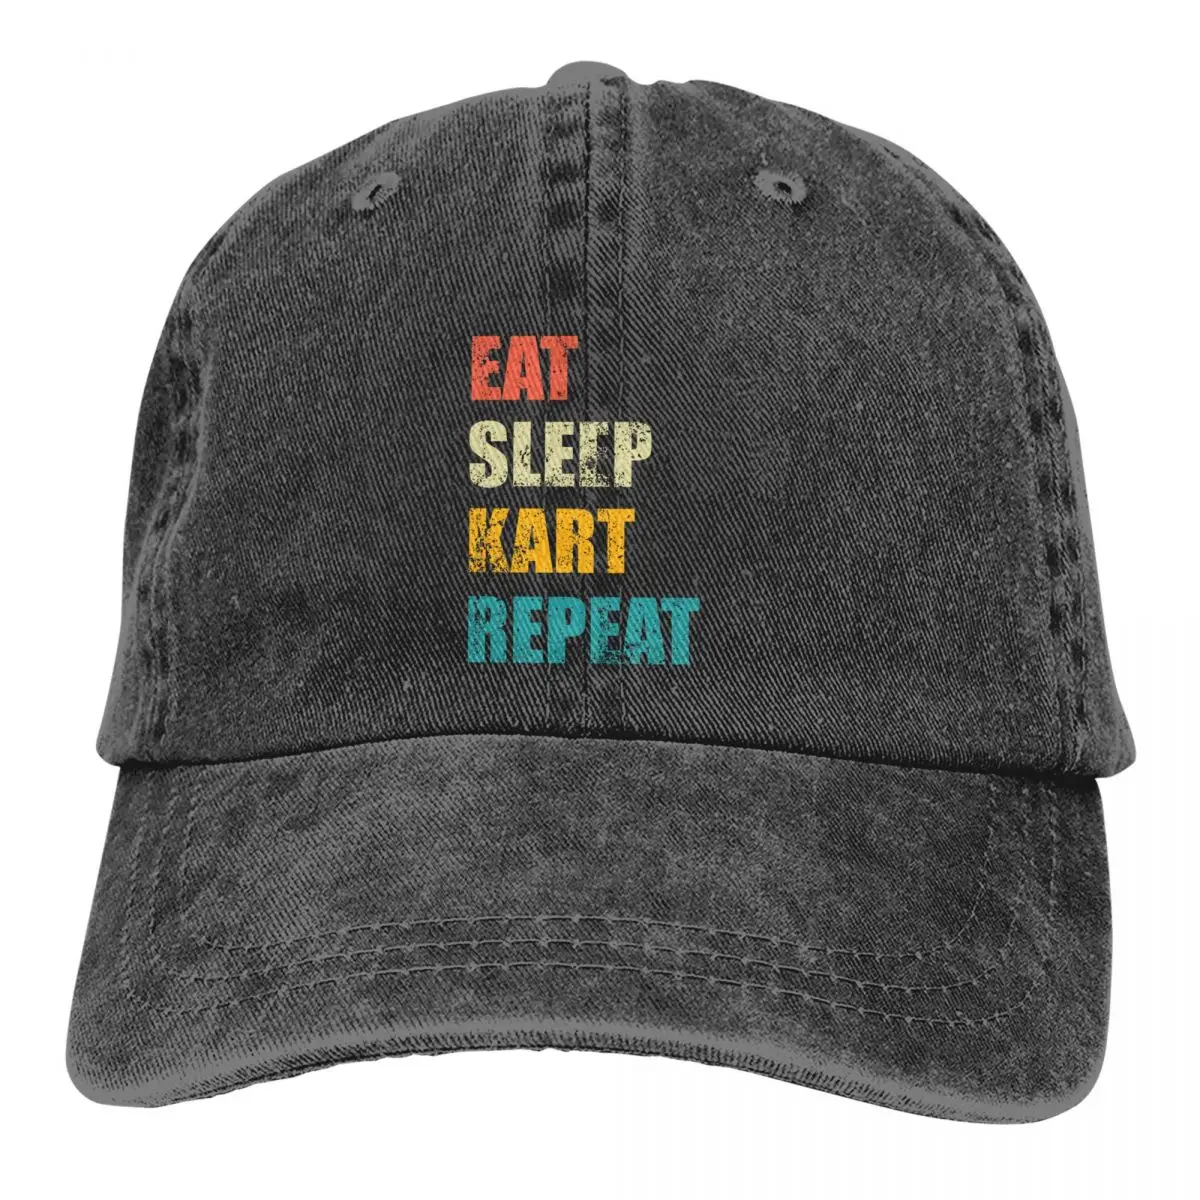 

Pure Color Dad Hats Eat Sleep Kart Repeat Women's Hat Sun Visor Baseball Caps Meme Peaked Cap